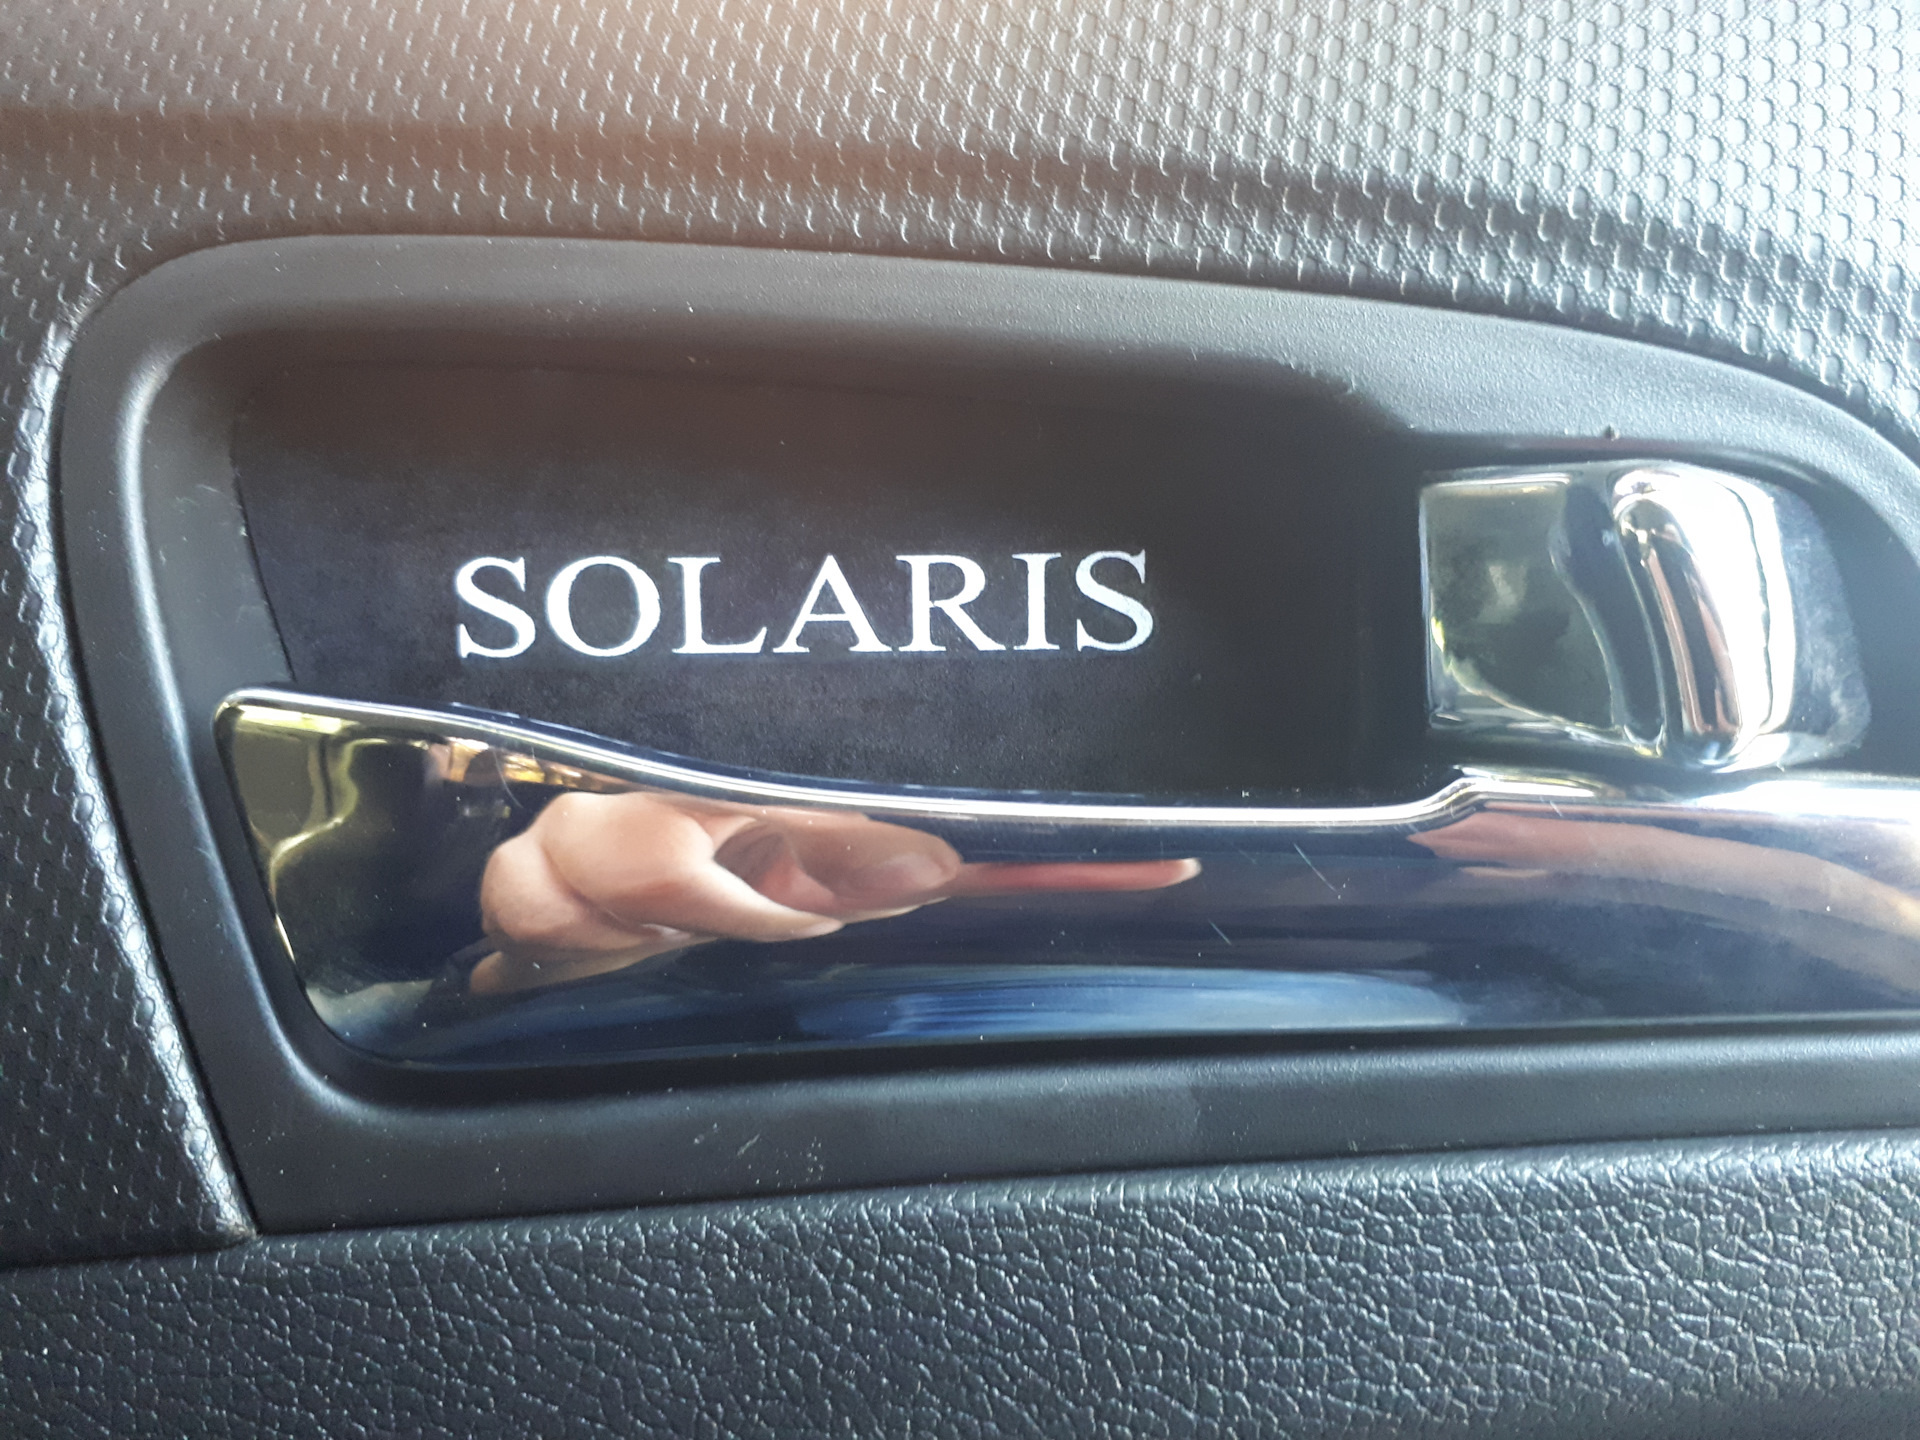 Дверная ручка хендай солярис. Подсветка ручек дверей Hyundai Solaris 1. Подсветка ручек дверей Хендай Солярис 2011. Подсветка внутренних ручек дверей Solaris. Подсветка ручек дверей Хендай.